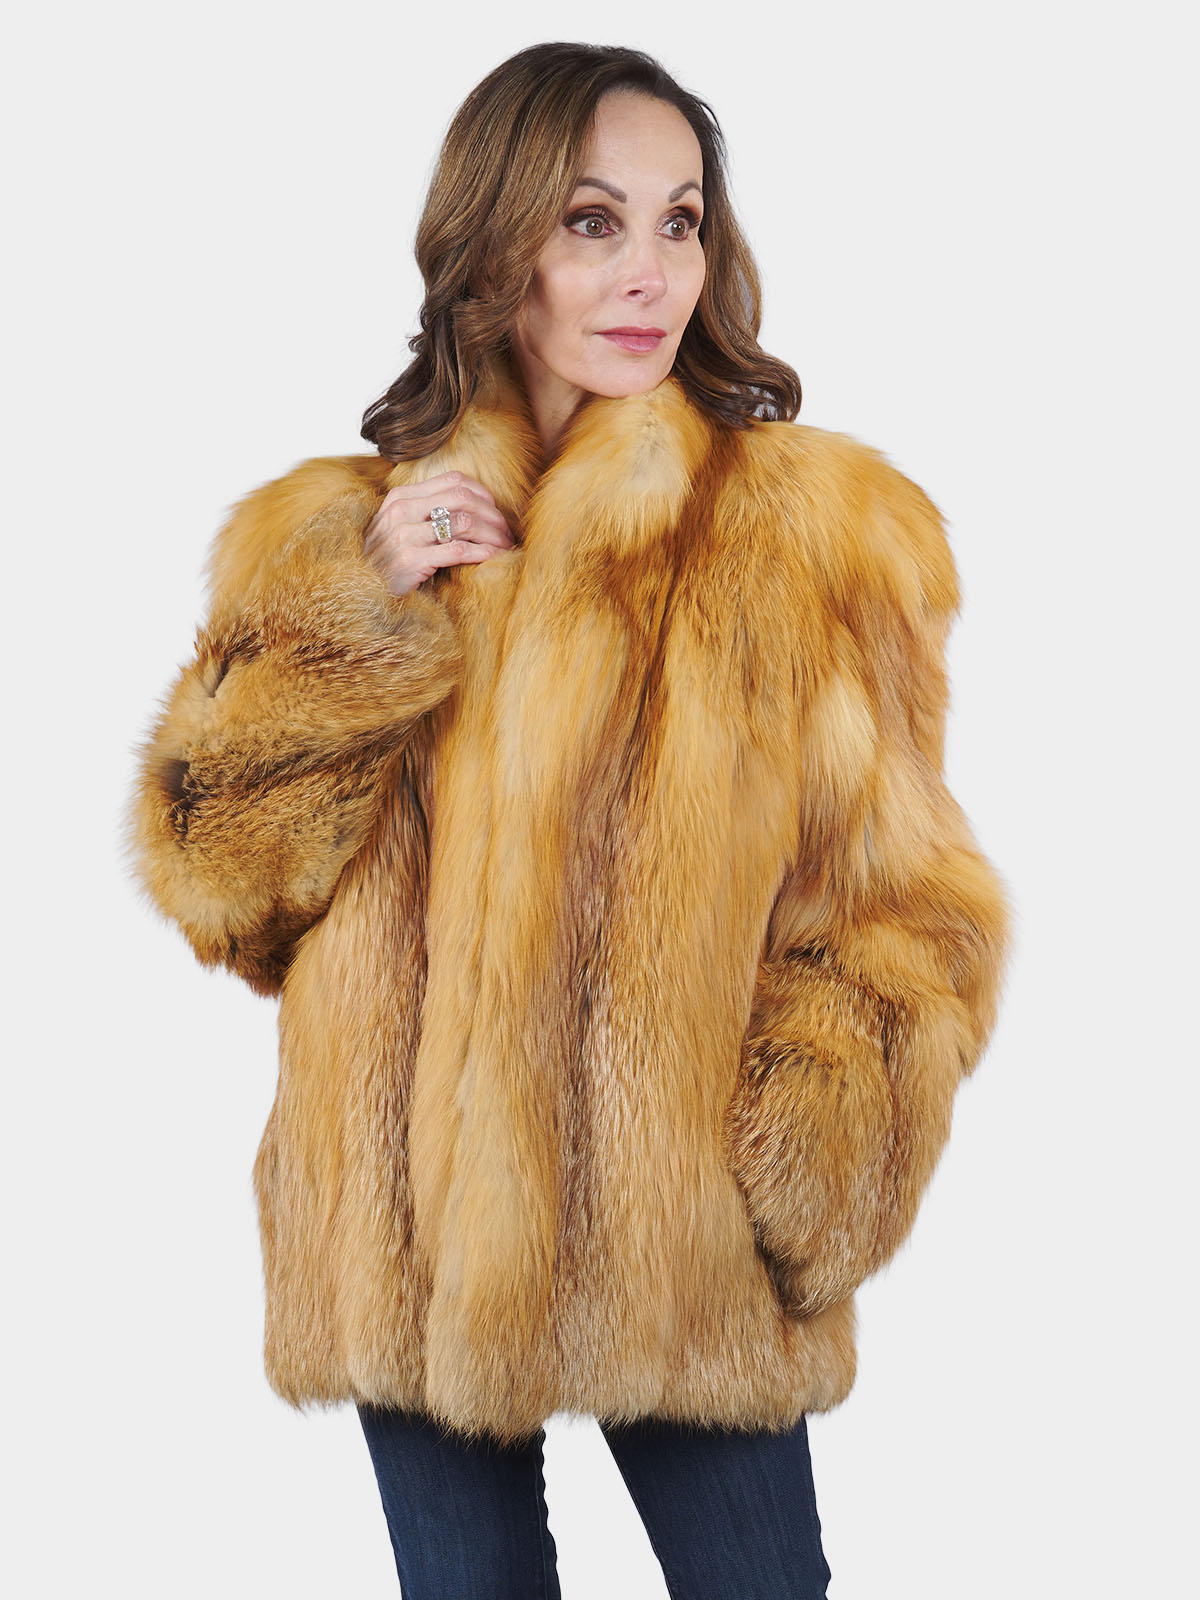 Buy women's fox fur coat, real fur in the online shop FURstore